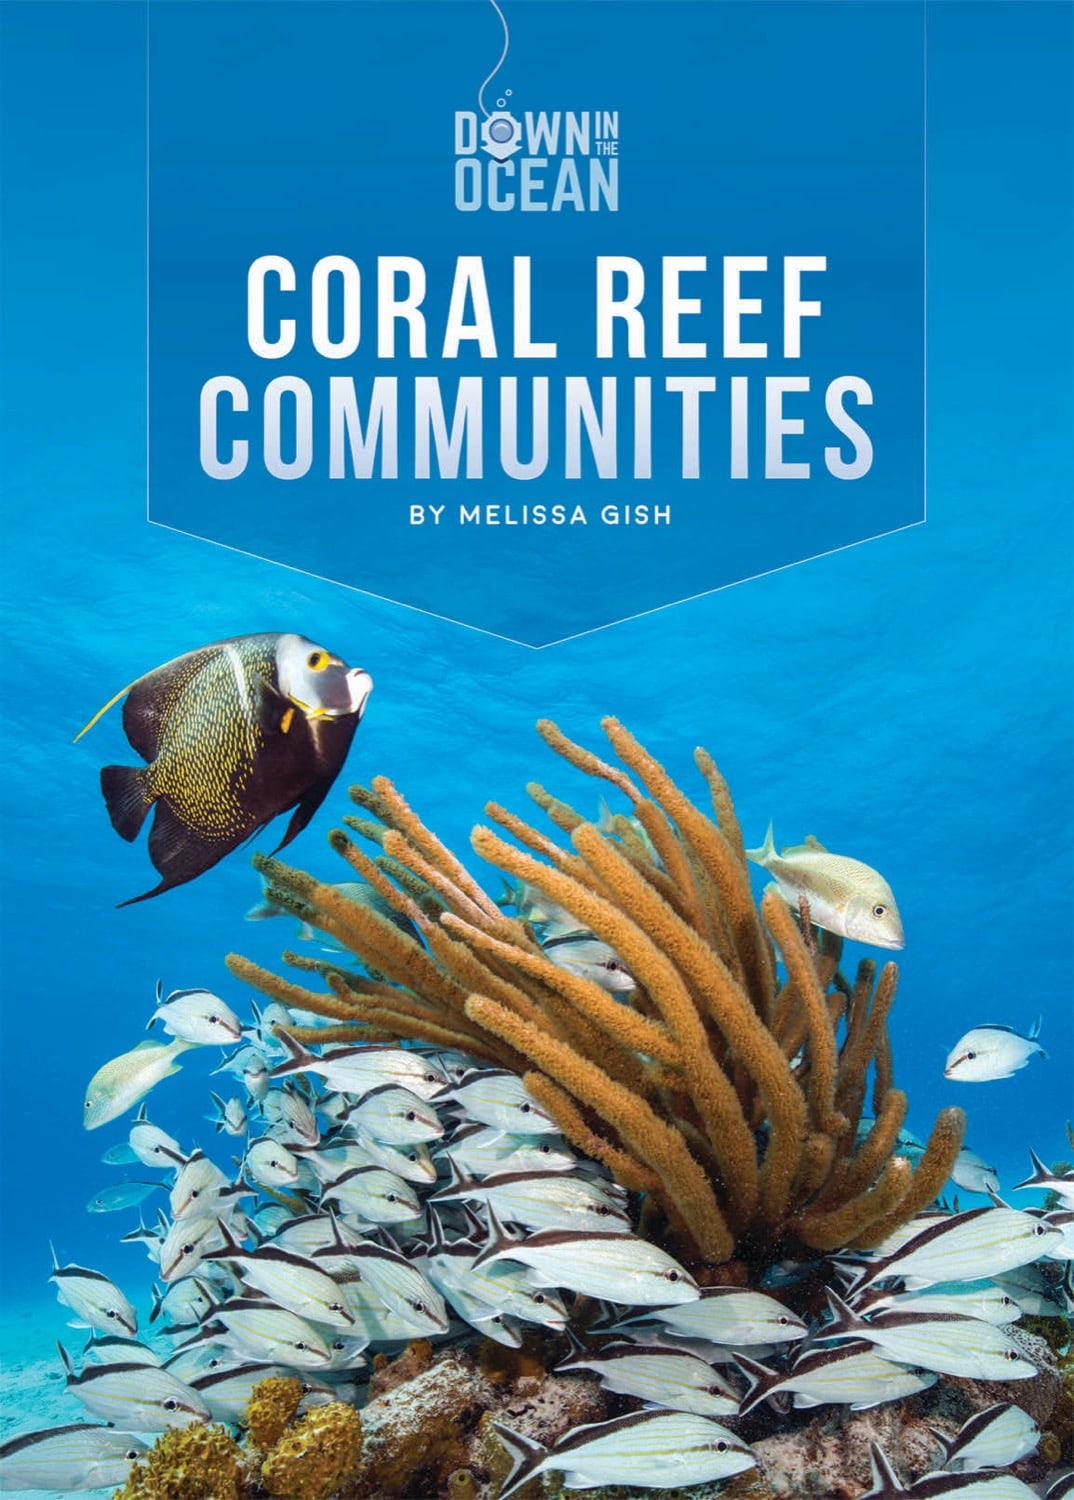 Down in the Ocean: Coral Reef Communities